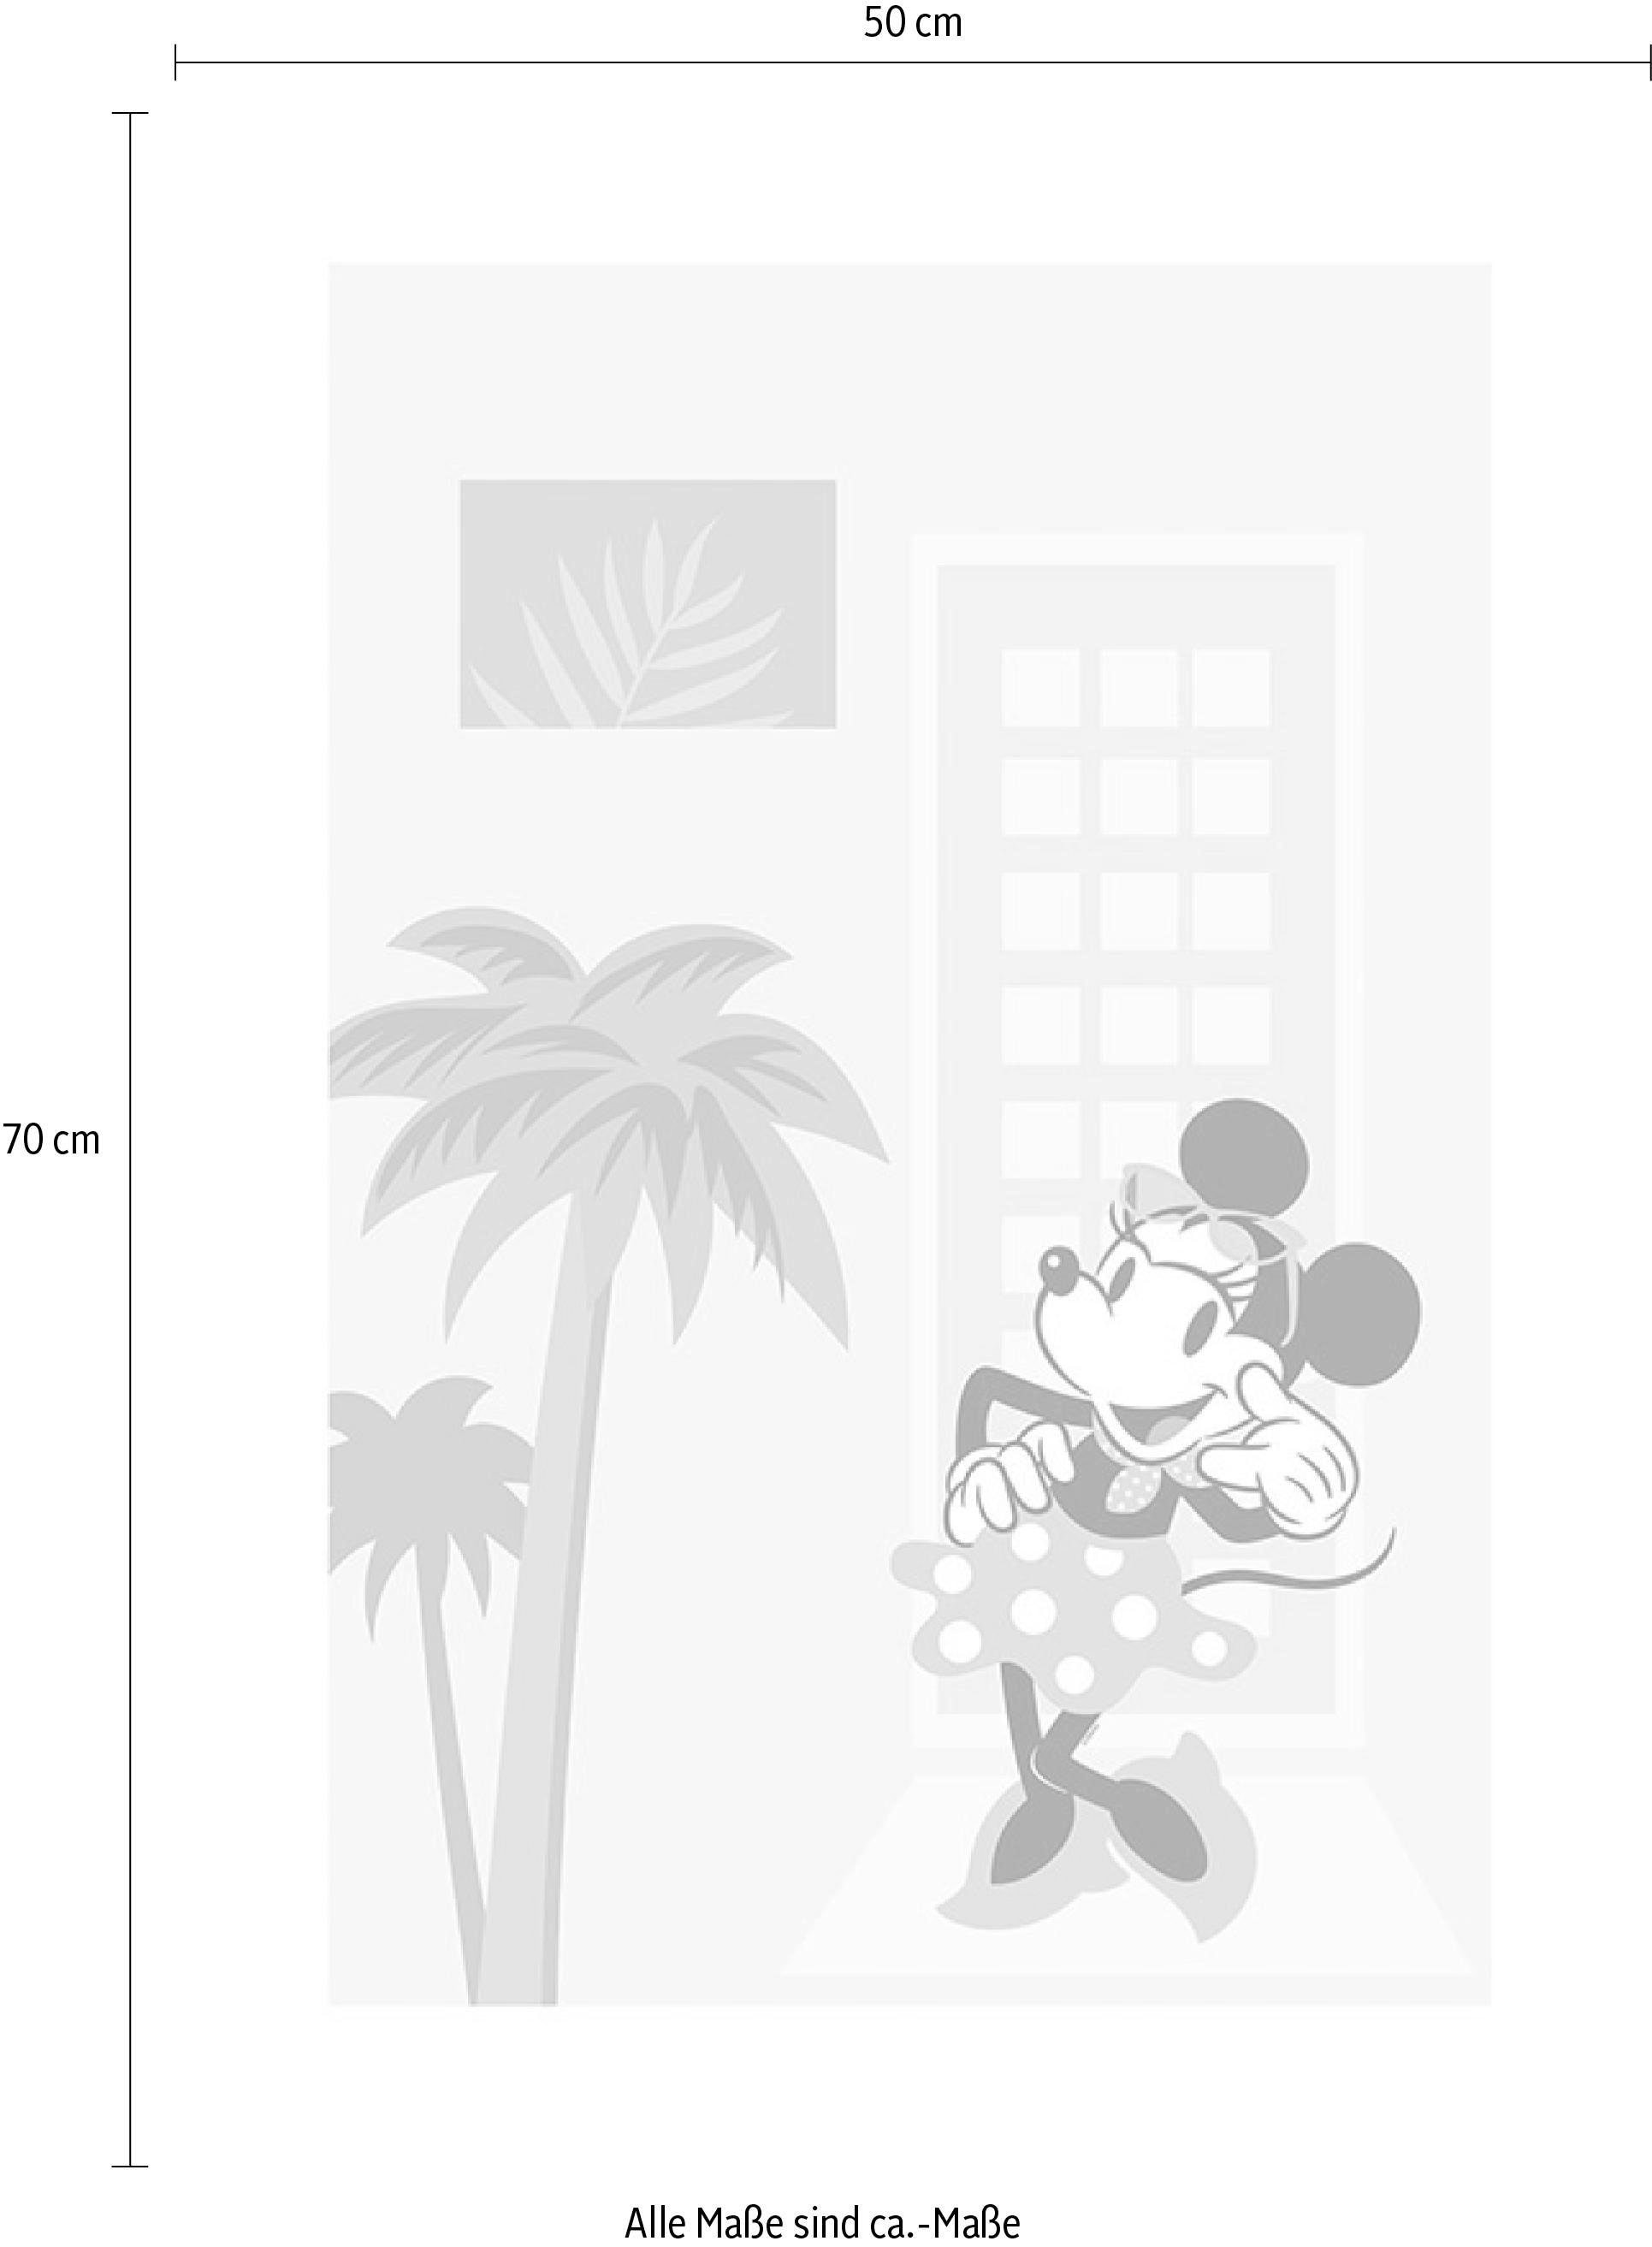 Komar Poster »Minnie Mouse Palms«, Disney, (1 St.), Kinderzimmer, Schlafzimmer, Wohnzimmer